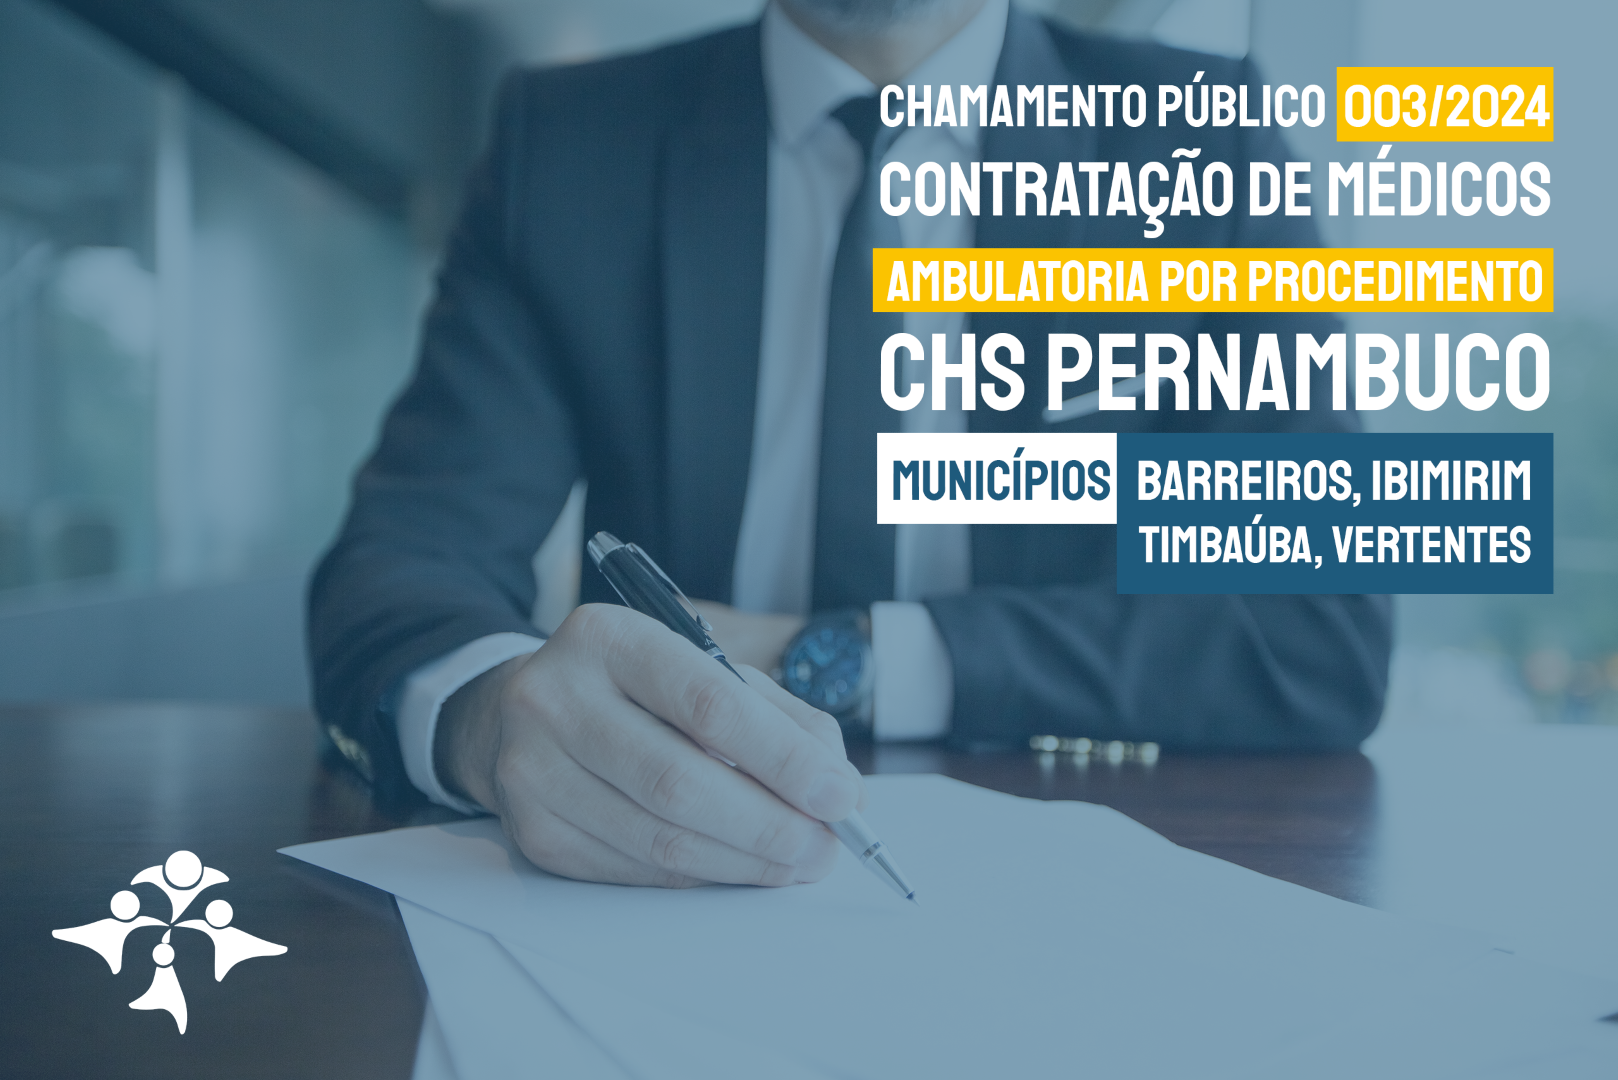 Chamamento Público 003/2024 – Contratação de Médicos – CHS Pernambuco (Barreiros, Ibimirim, Timbaúba, Vertentes)